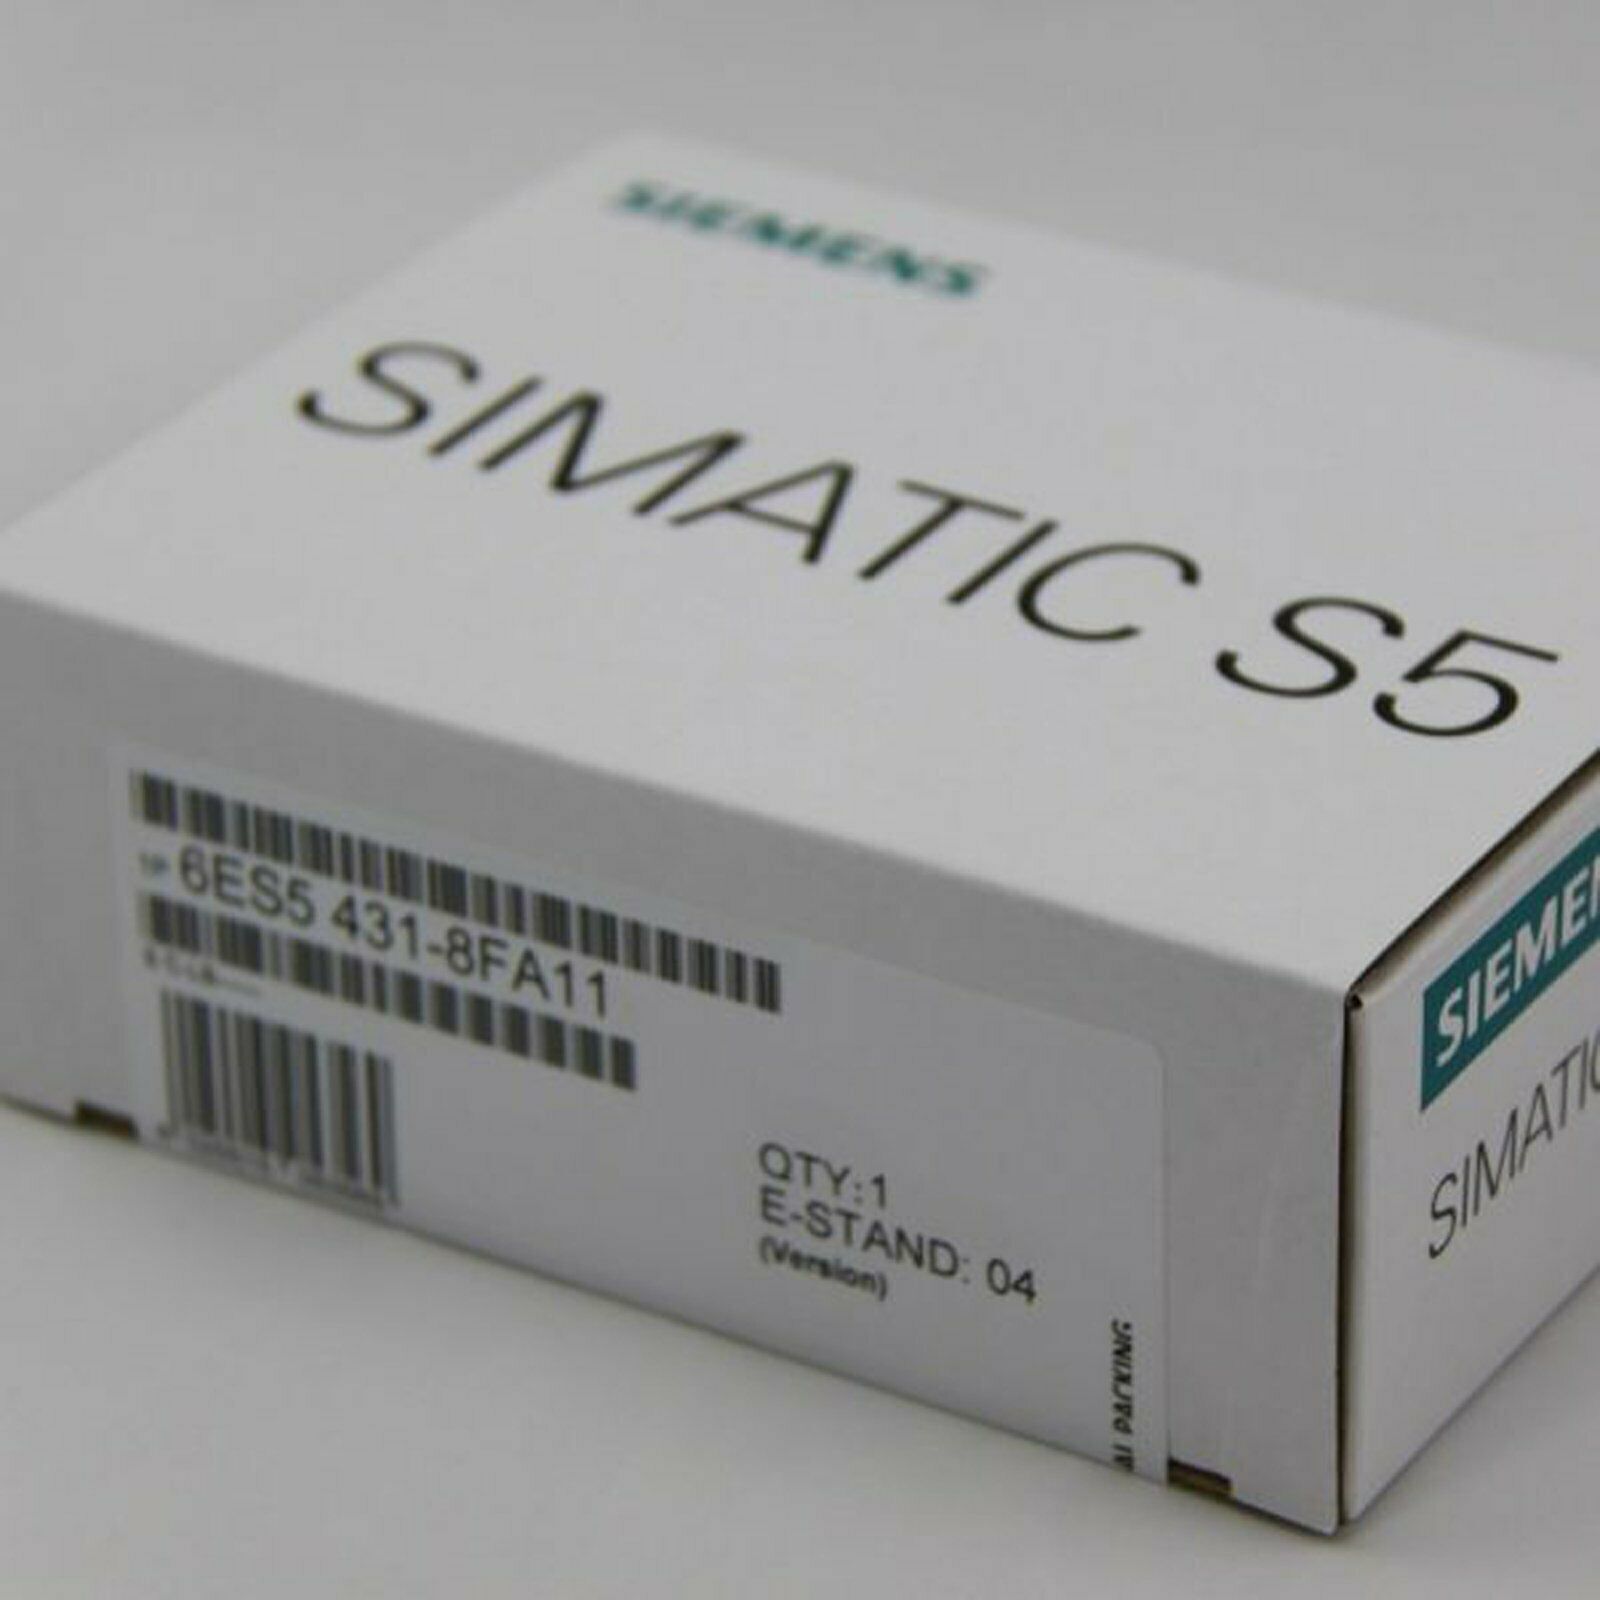 new 1PC  In Box Siemens 6ES5431-8FA11 6ES5 431-8FA11 One year